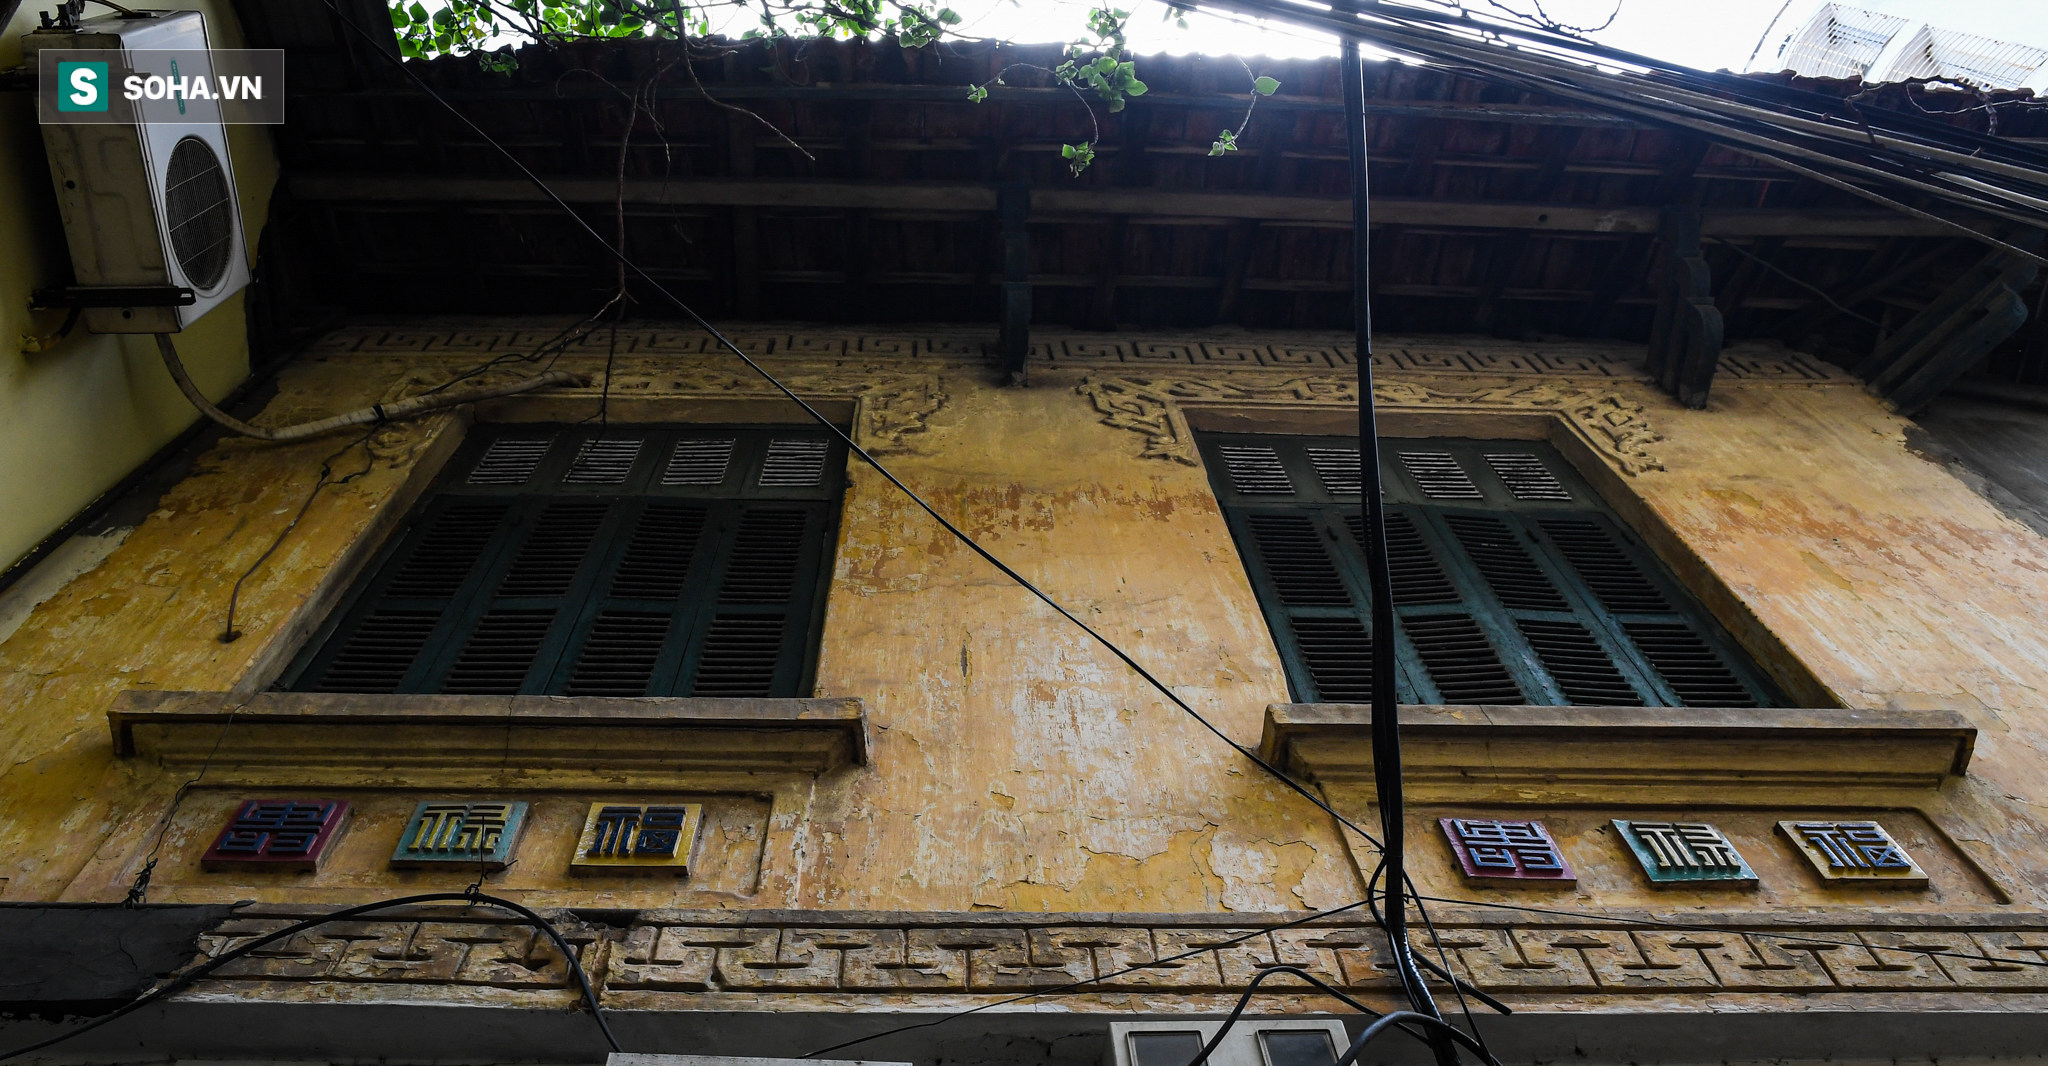 Biệt thự Pháp cổ đẹp nhất nhì Hà Nội của Tổng đốc Bắc Giang: Xuống cấp, bị xẻ thành 20 căn - Ảnh 4.